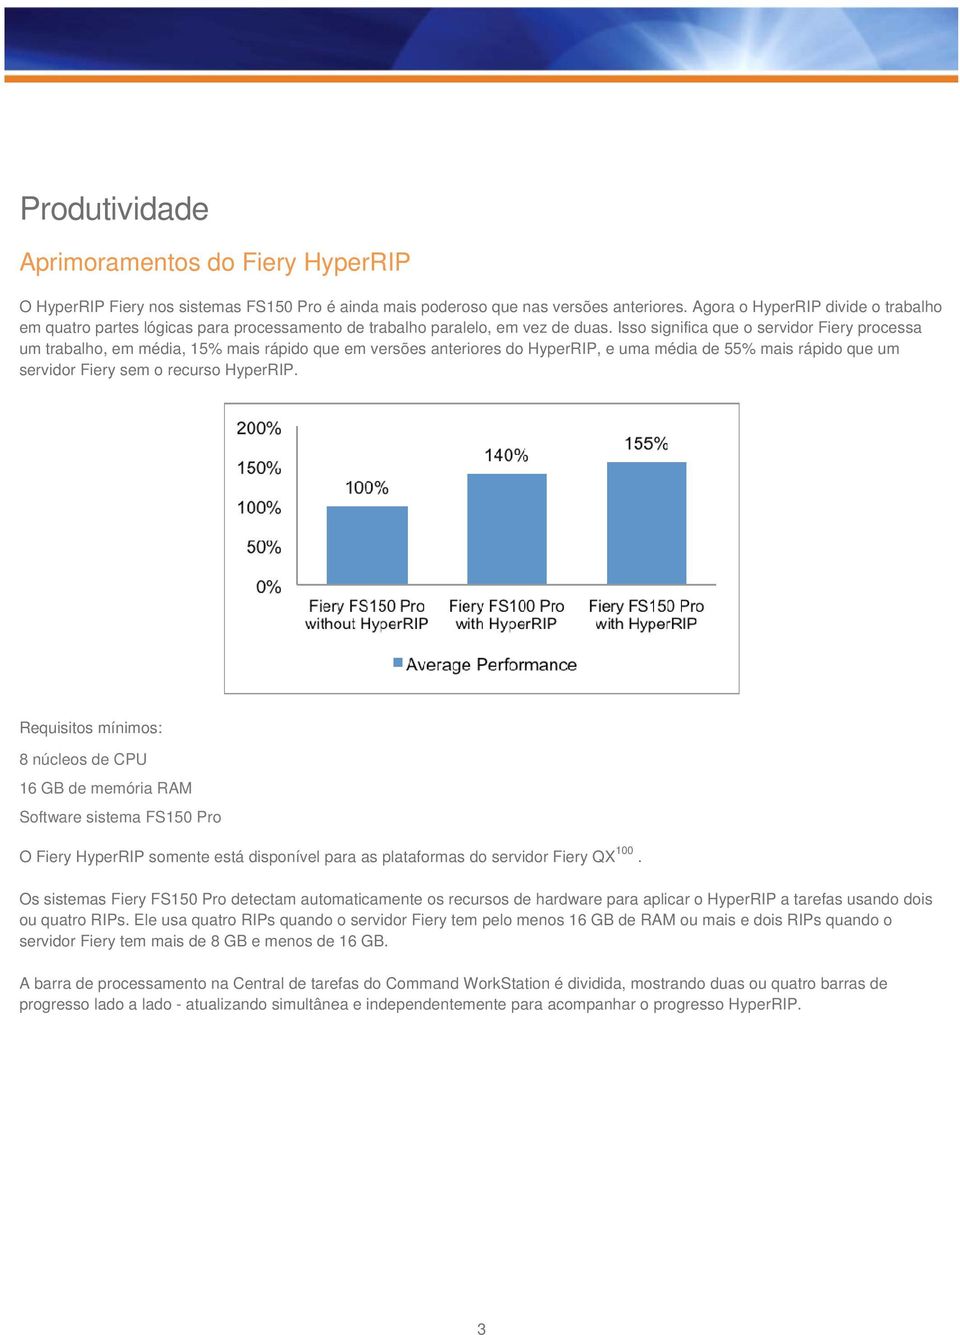 Isso significa que o servidor Fiery processa um trabalho, em média, 15% mais rápido que em versões anteriores do HyperRIP, e uma média de 55% mais rápido que um servidor Fiery sem o recurso HyperRIP.